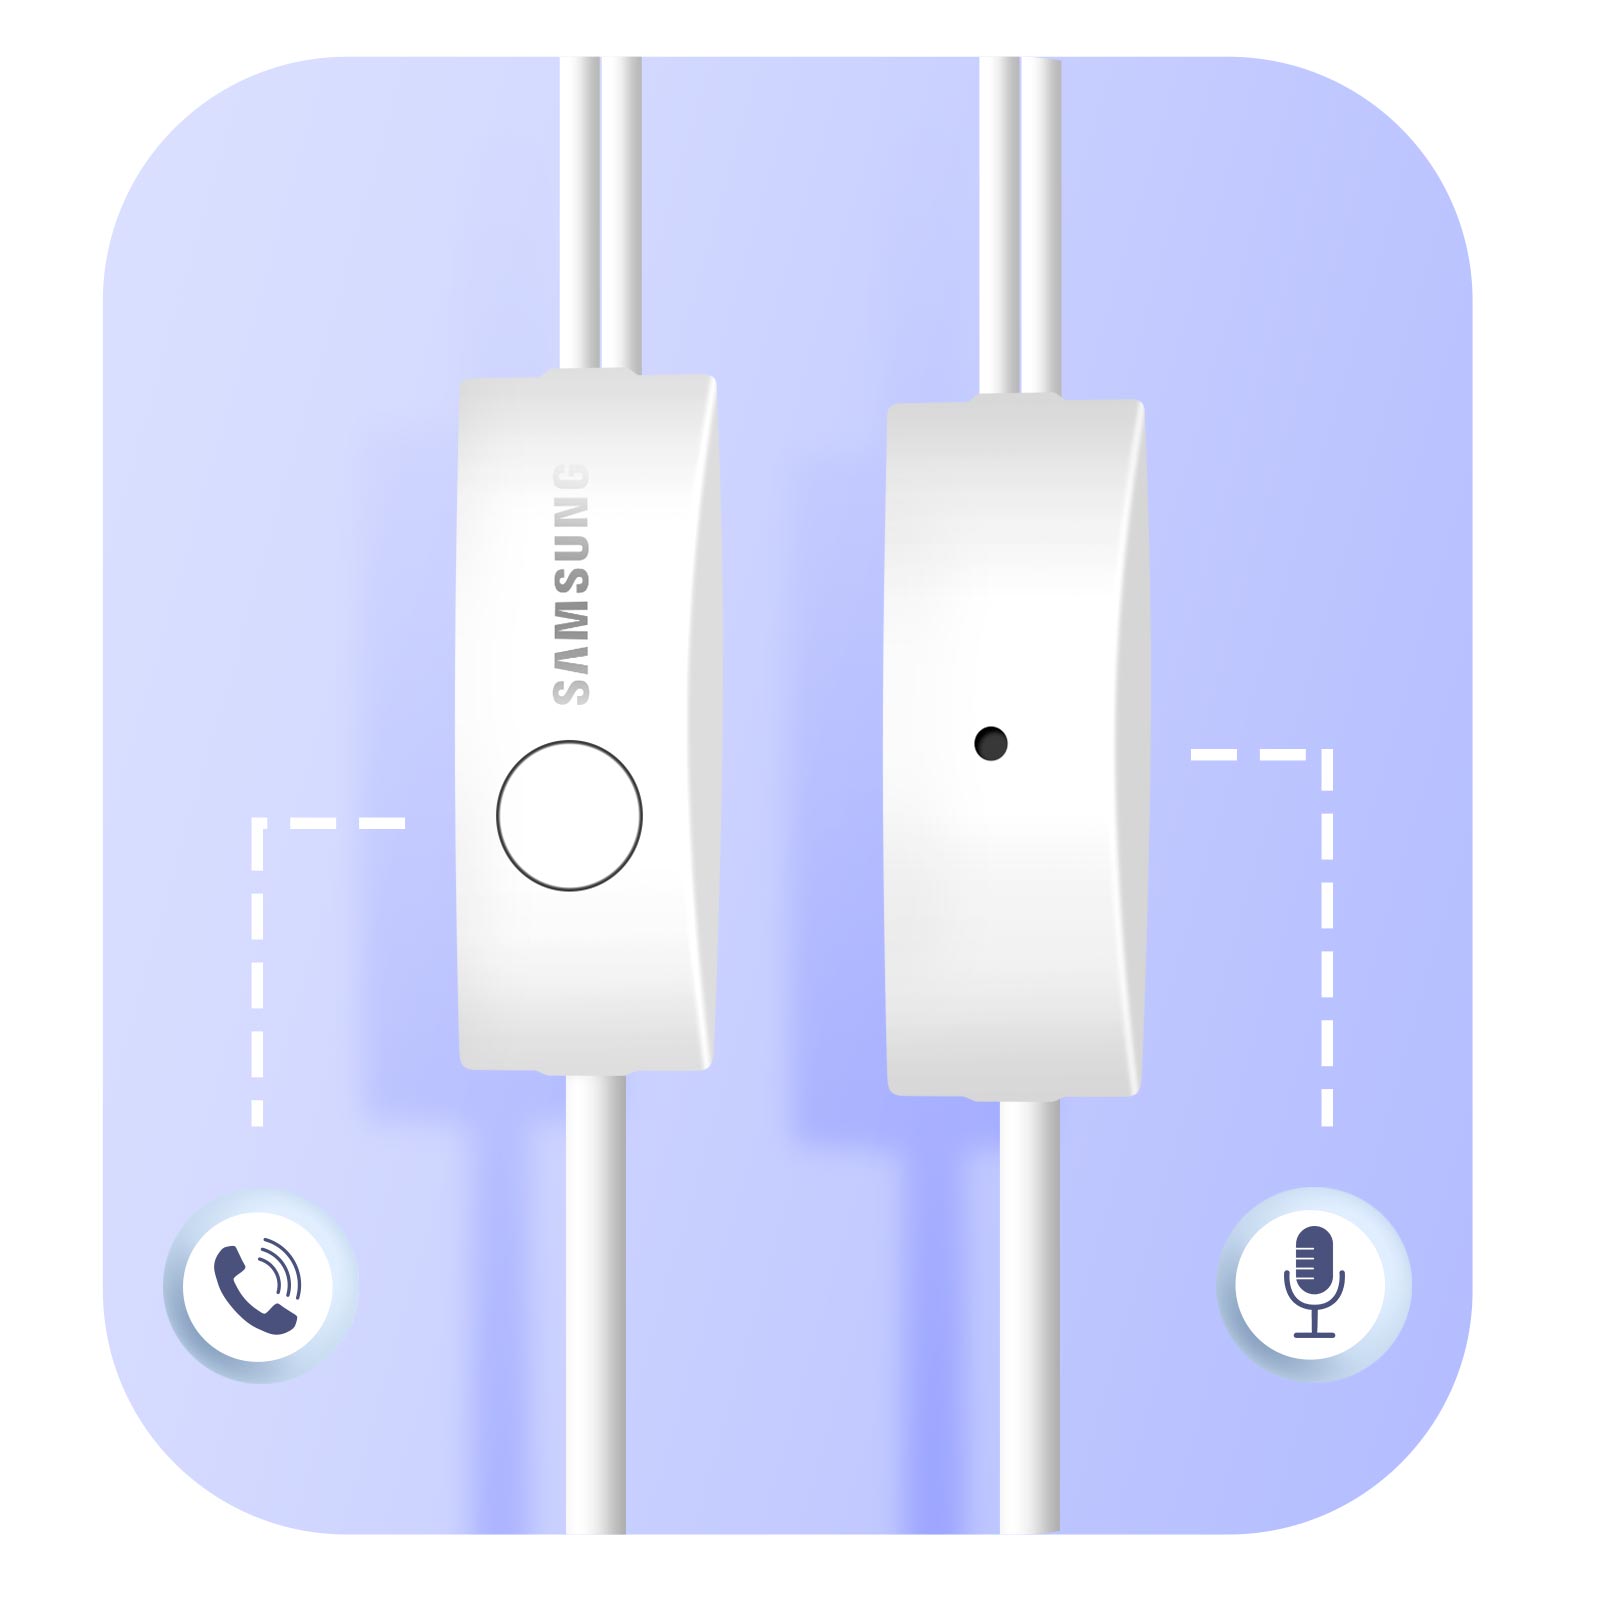 Original Samsung Ecouteurs Casque Kit Pieton Audio Main Libre Earpod  Officiel